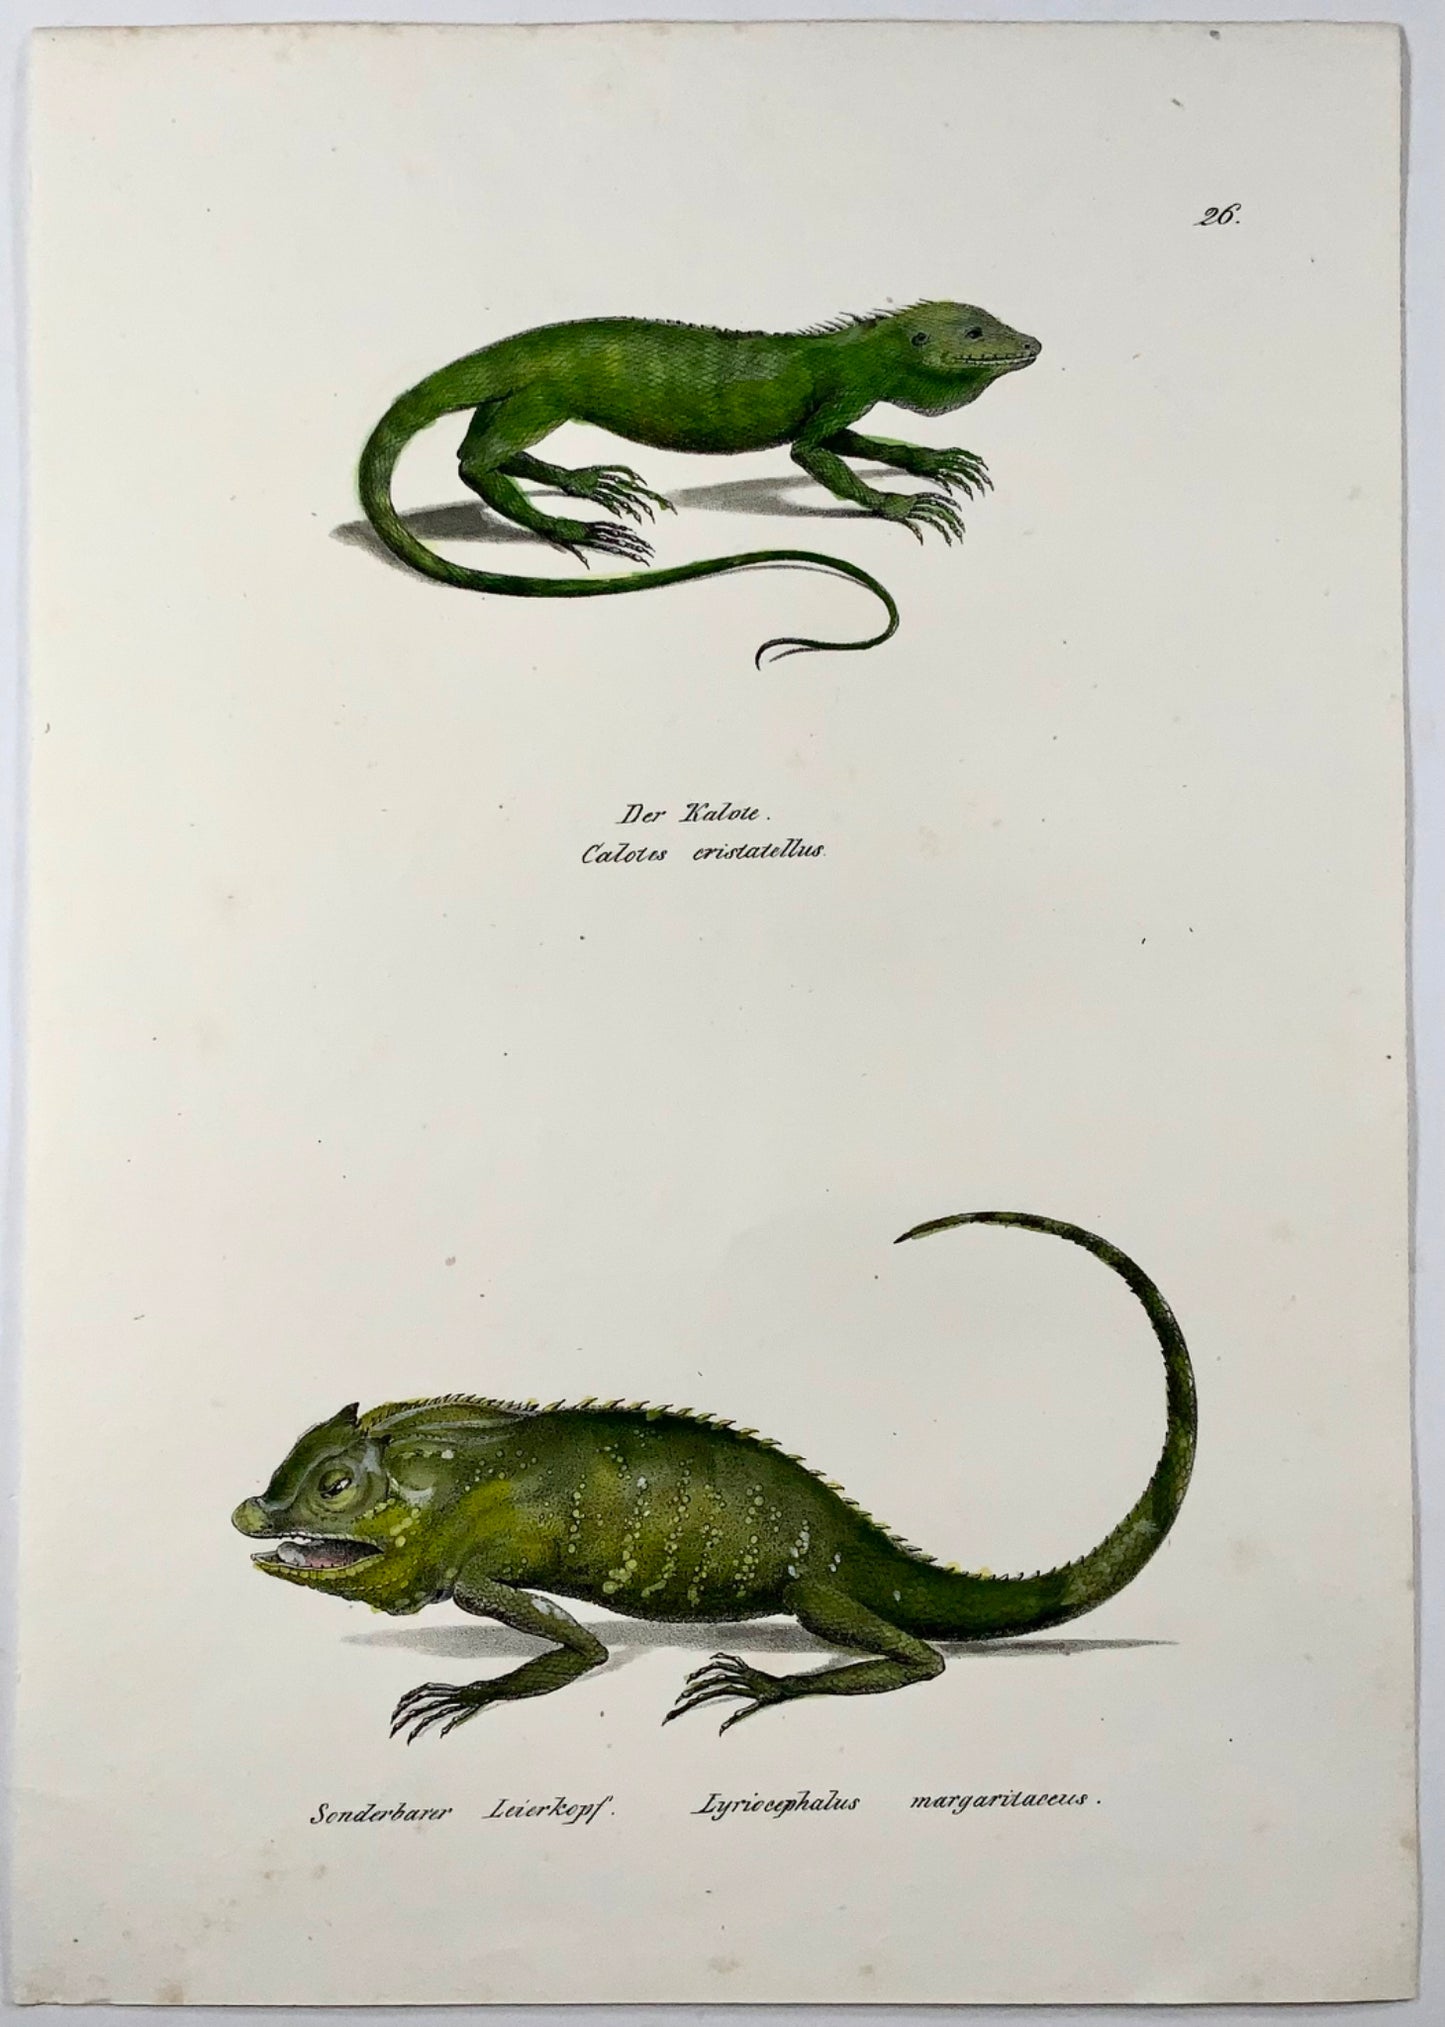 1833 HR Schinz (b1777), lézard des forêts, lithographie sur pierre colorée à la main, reptile